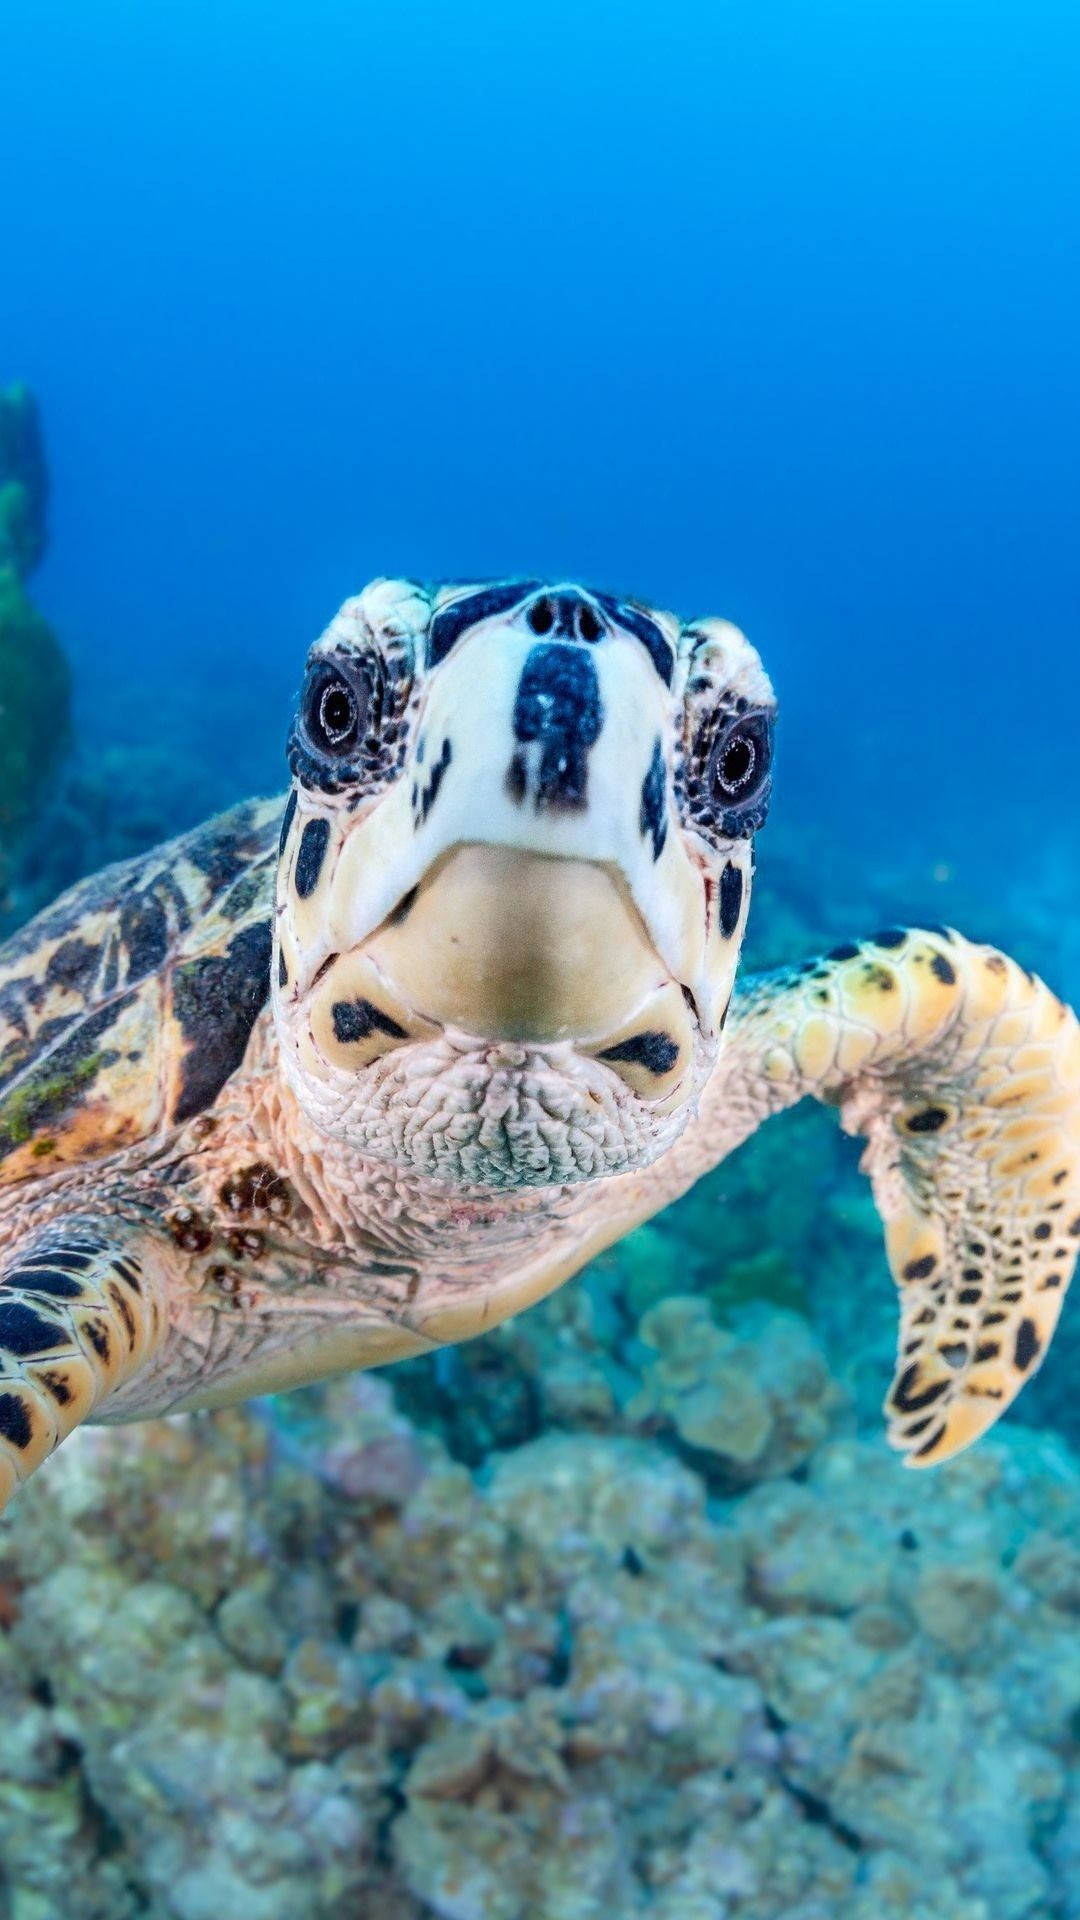 A close-up of an adorable sea turtle gliding through the ocean Wallpaper